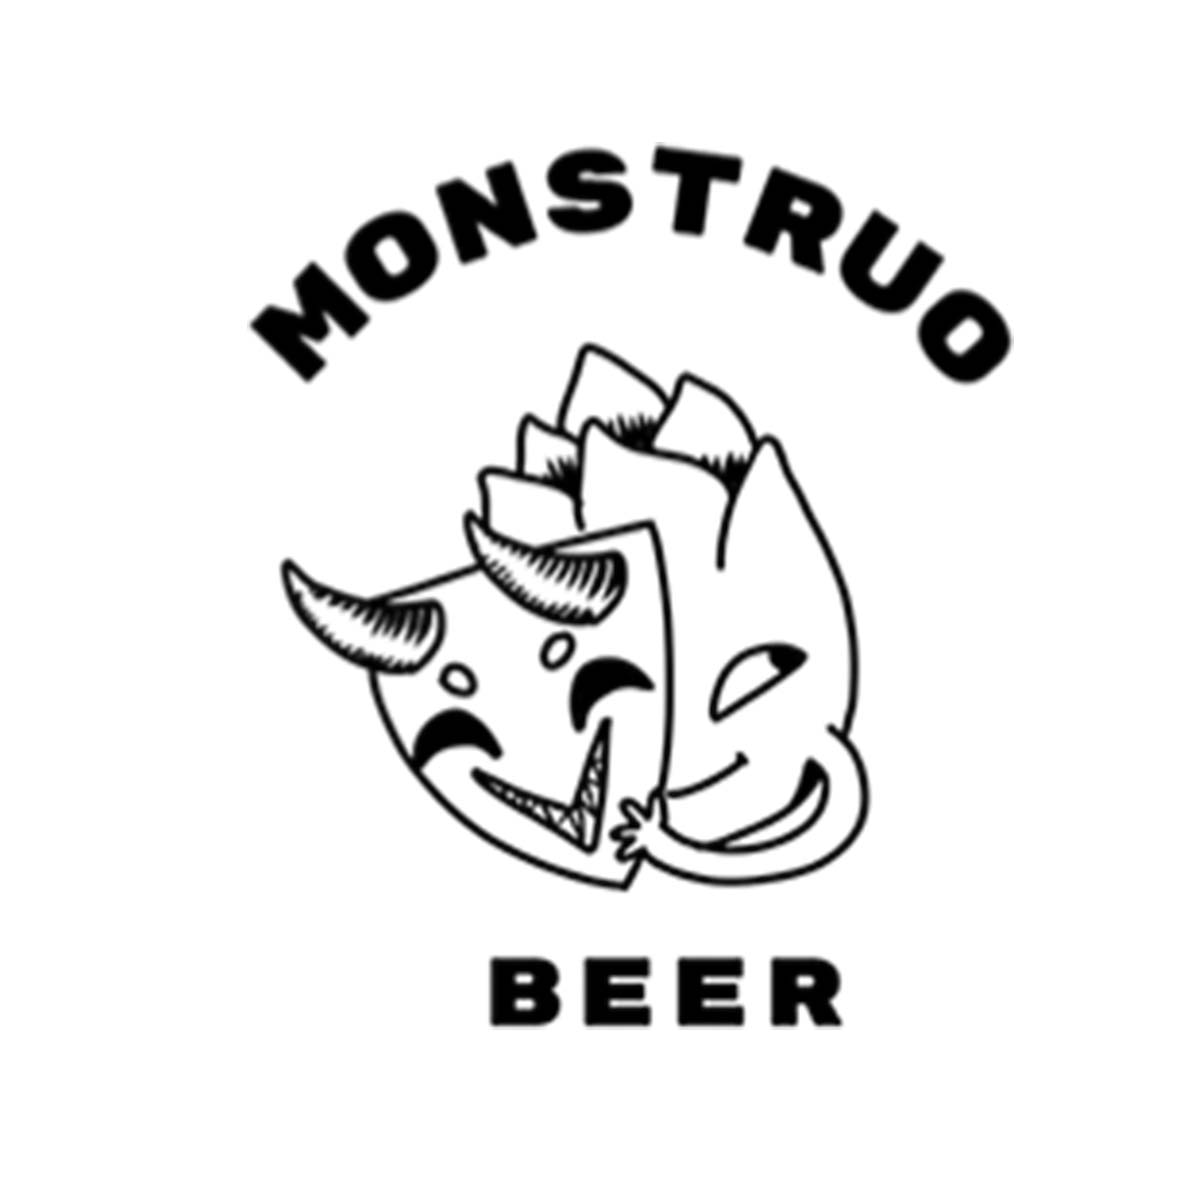 Brasserie Monstruo Beer